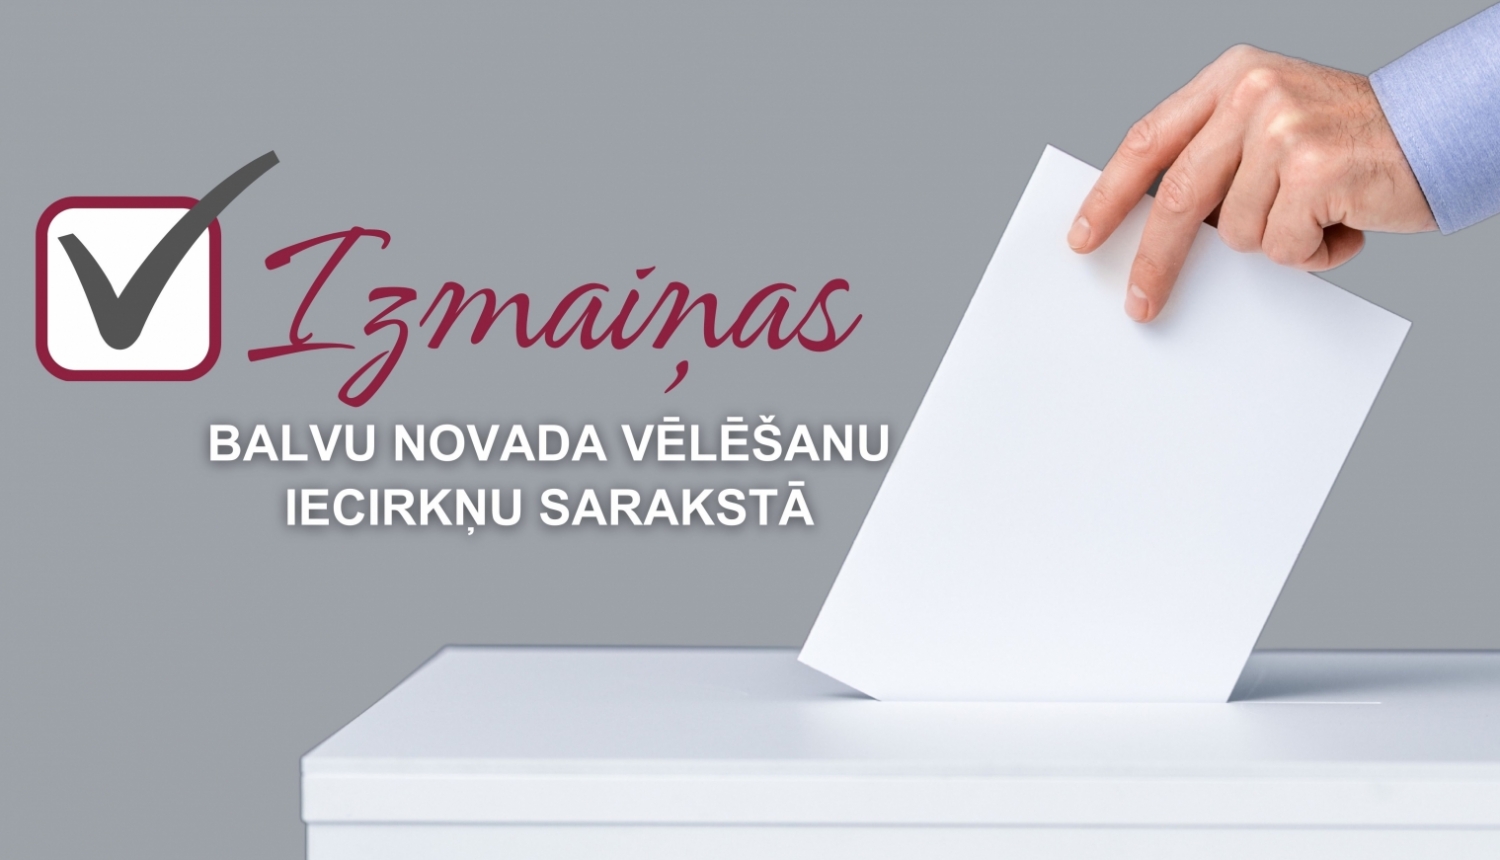 Izmaiņas Balvu novada vēlēšanu iecirkņu sarakstā